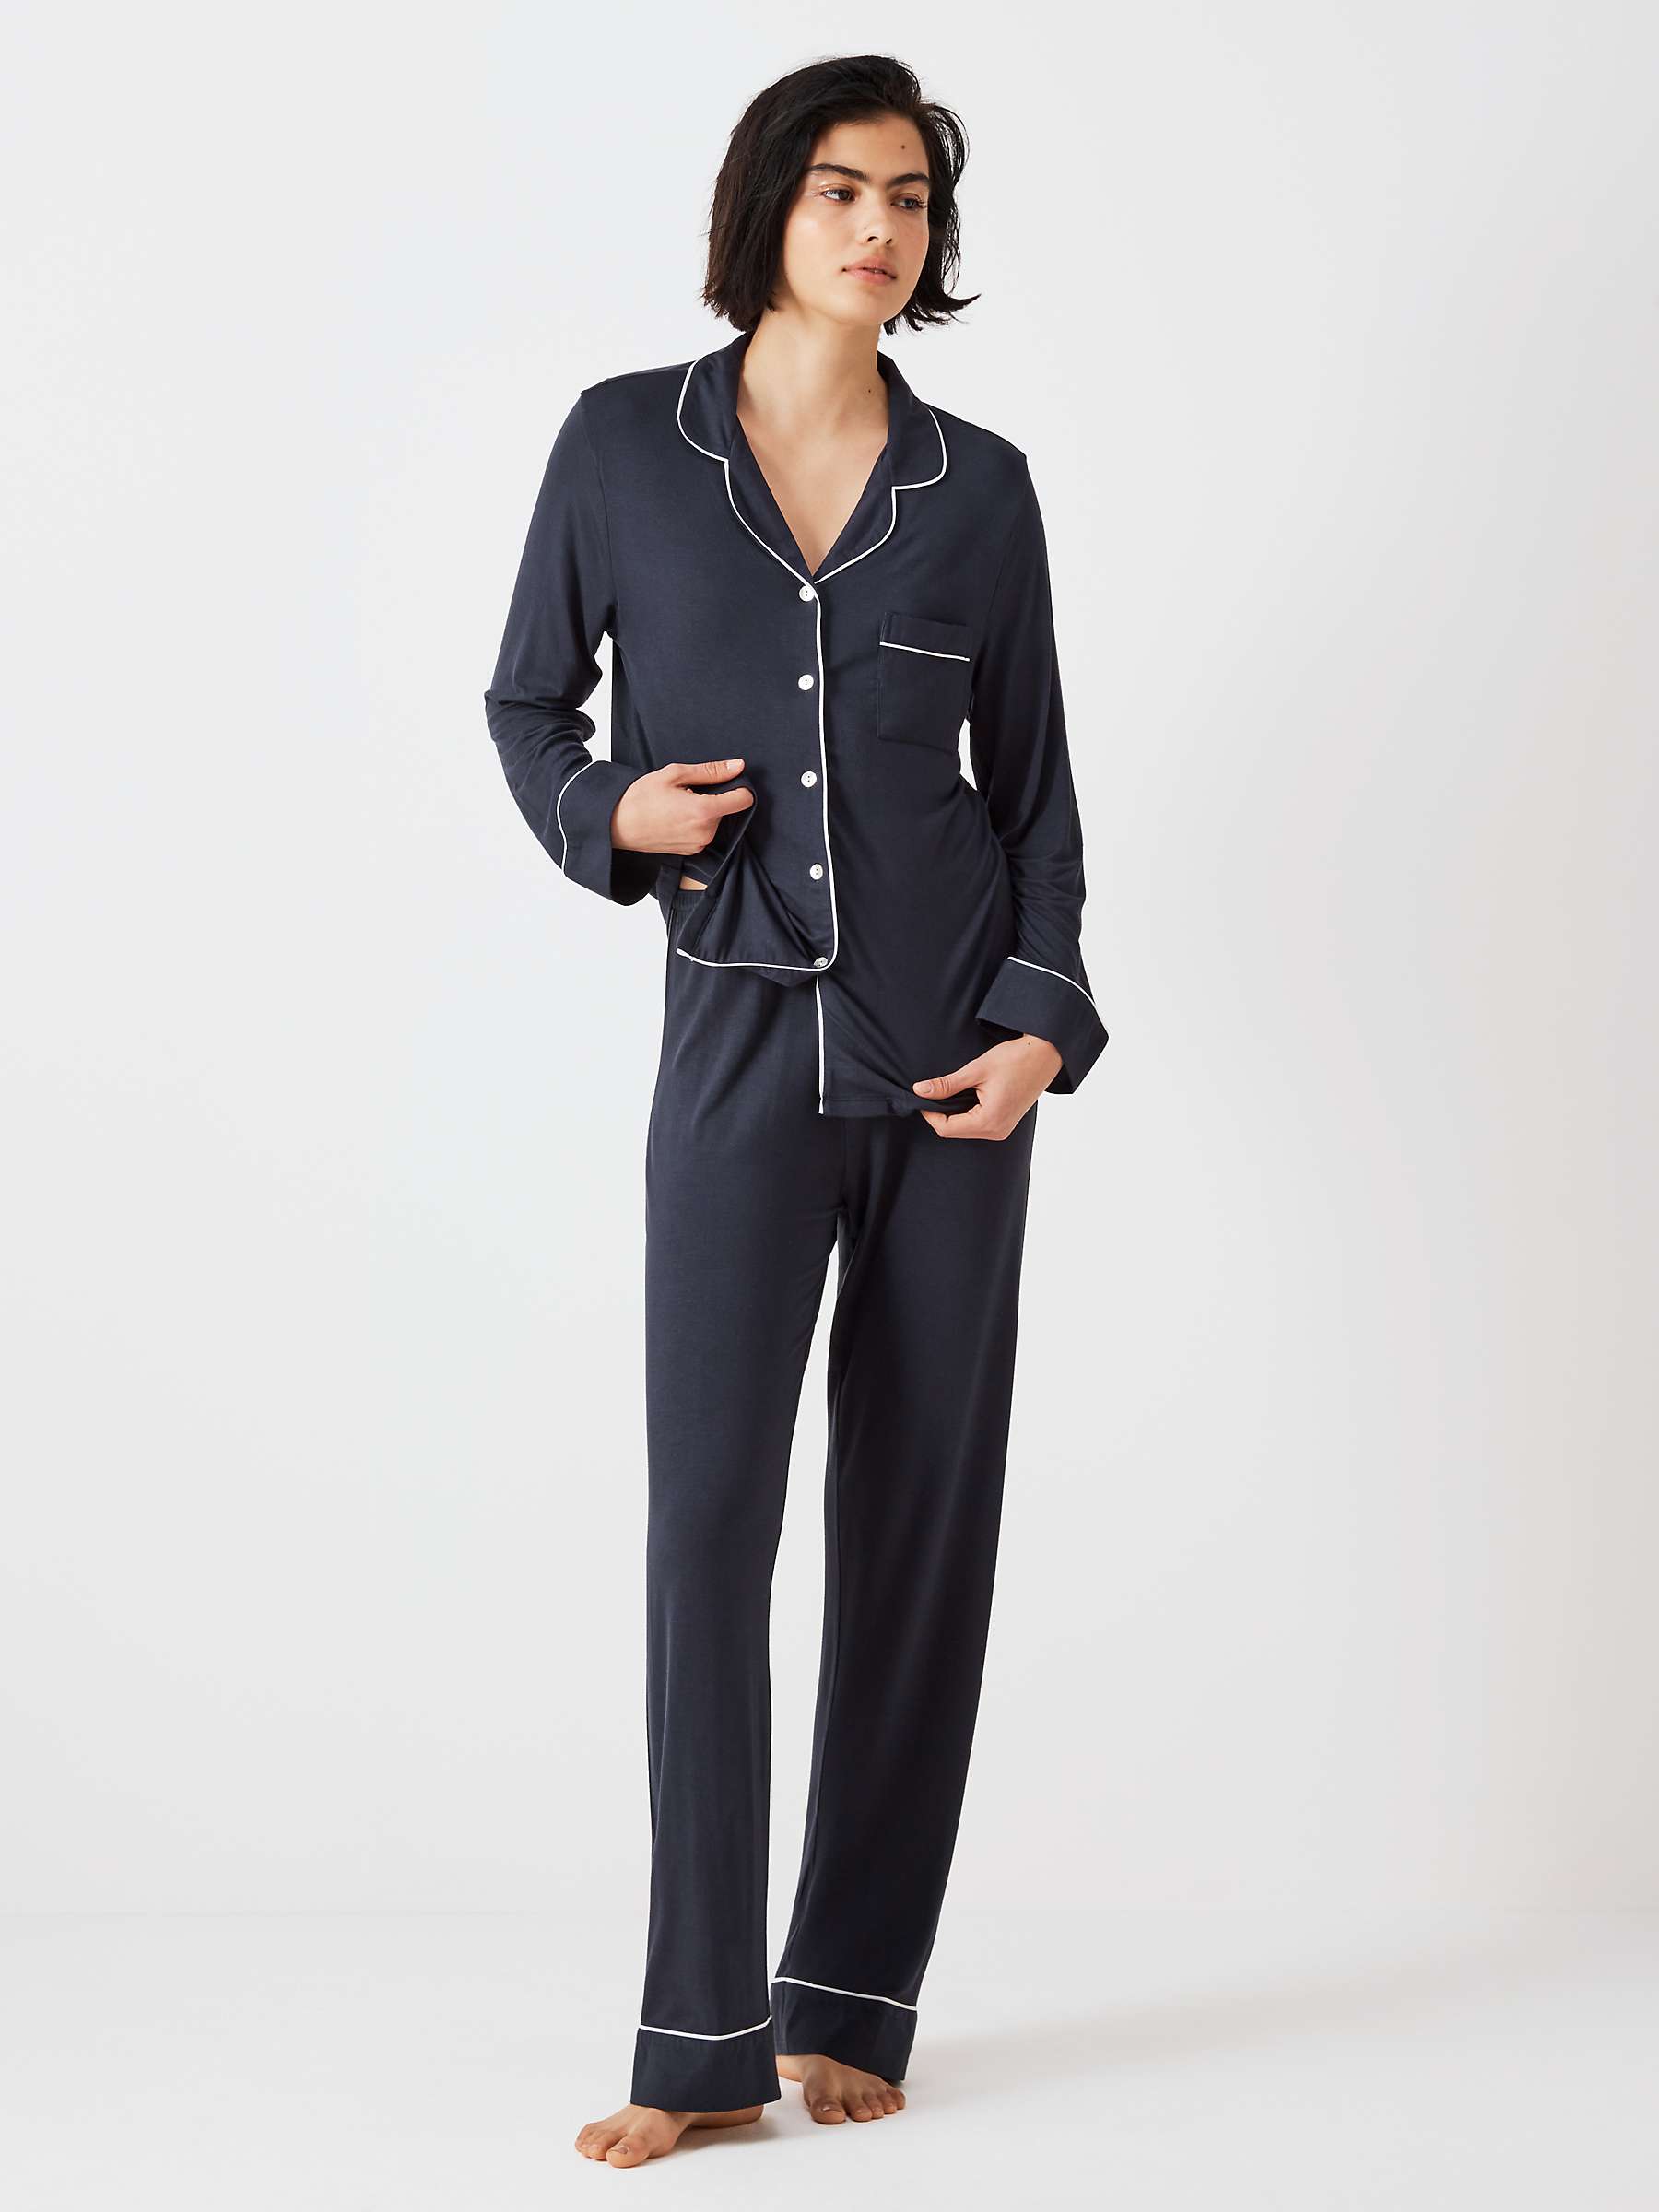 Buy John Lewis Aria Modal Pyjama Set Online at johnlewis.com